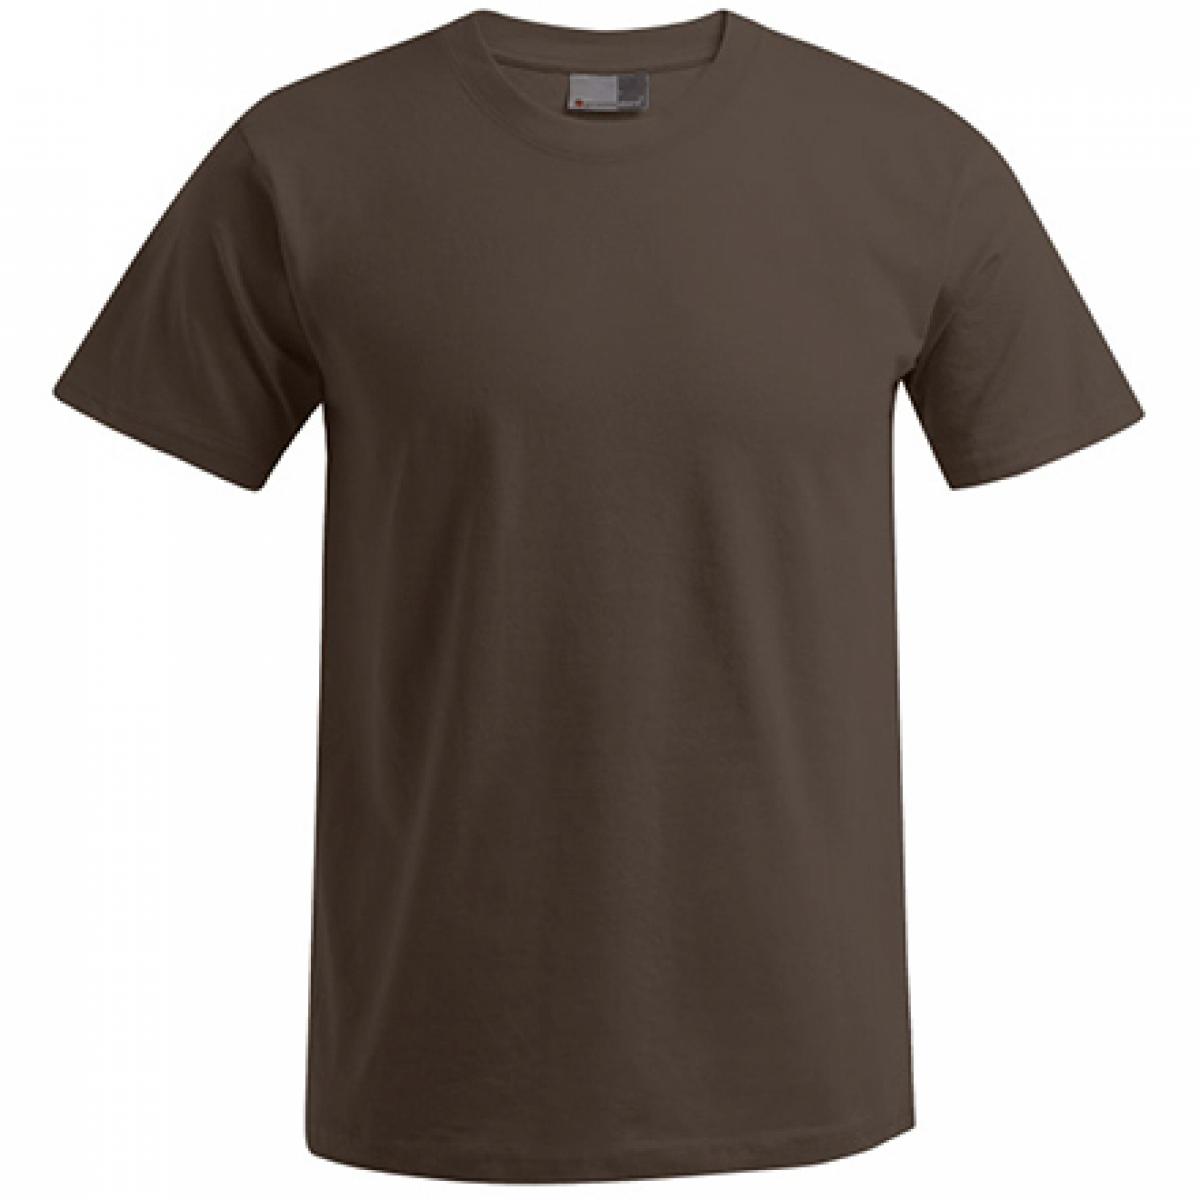 Hersteller: Promodoro Herstellernummer: 3000/3099 Artikelbezeichnung: Men´s Premium Herren T-Shirt - bis 5XL Farbe: Brown